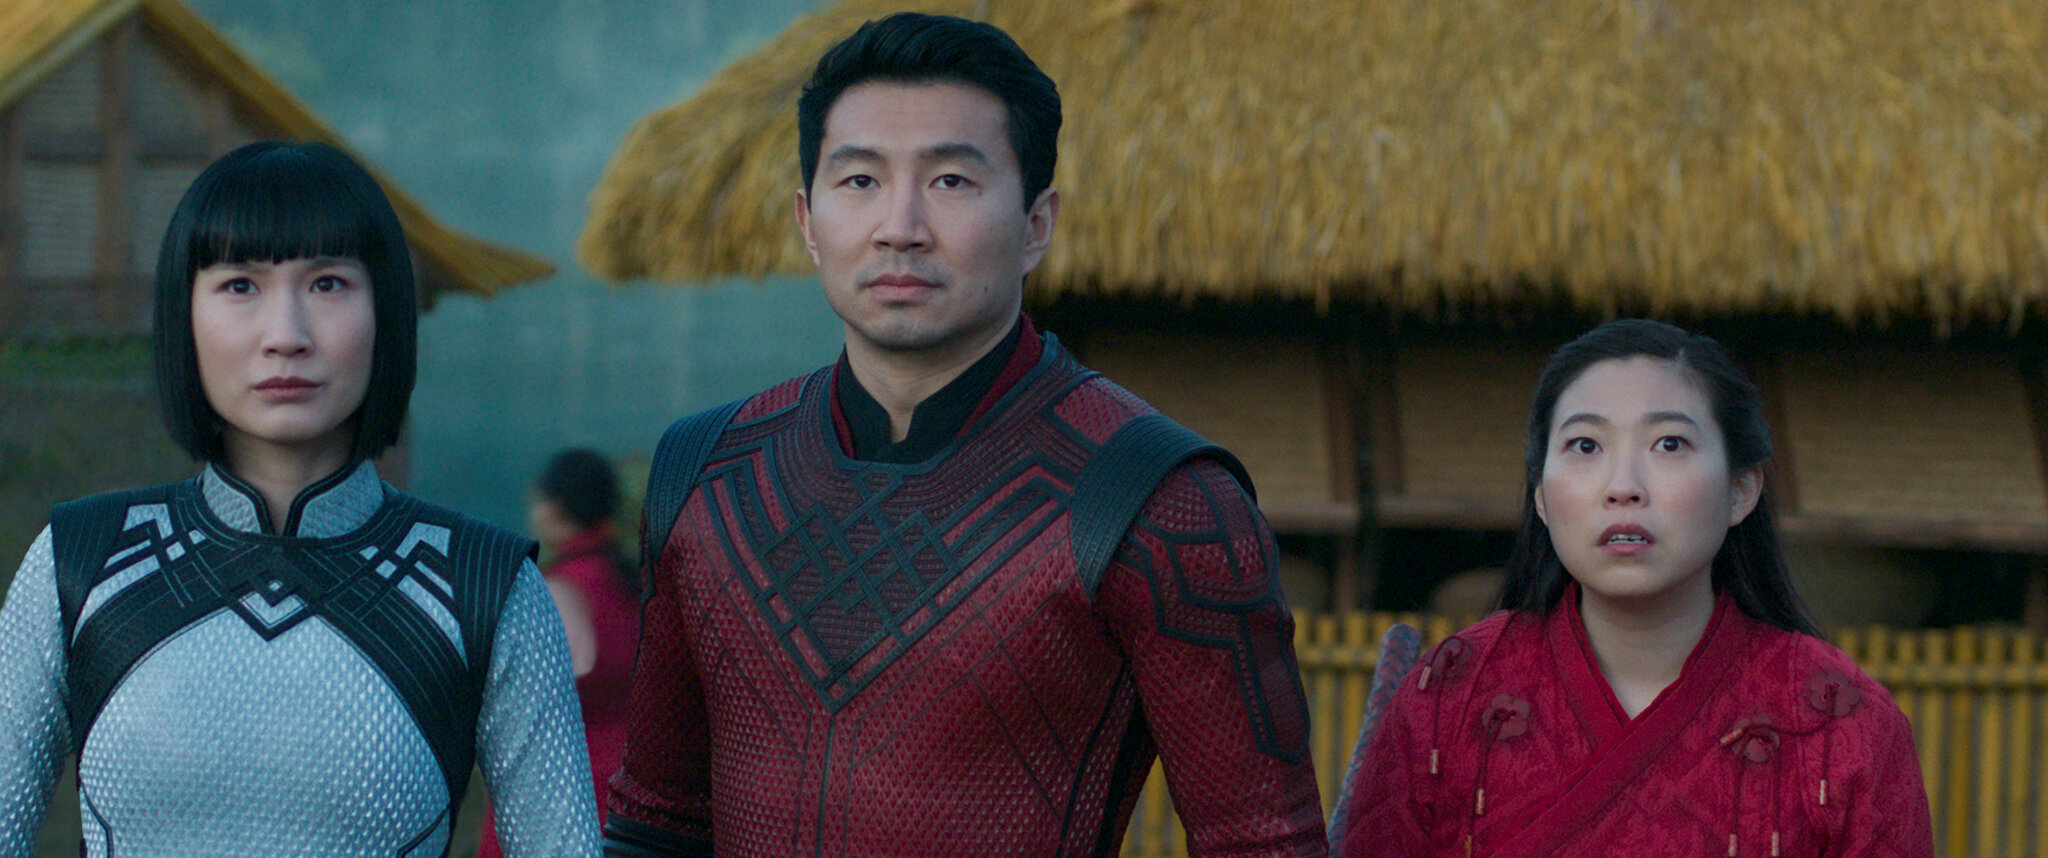 Cena do filme Shang-Chi e a Lenda dos Dez Anéis. A cena mostra 3 pessoas asiáticas em pé, usando roupas de guerra e olhando para frente com expressões de medo.